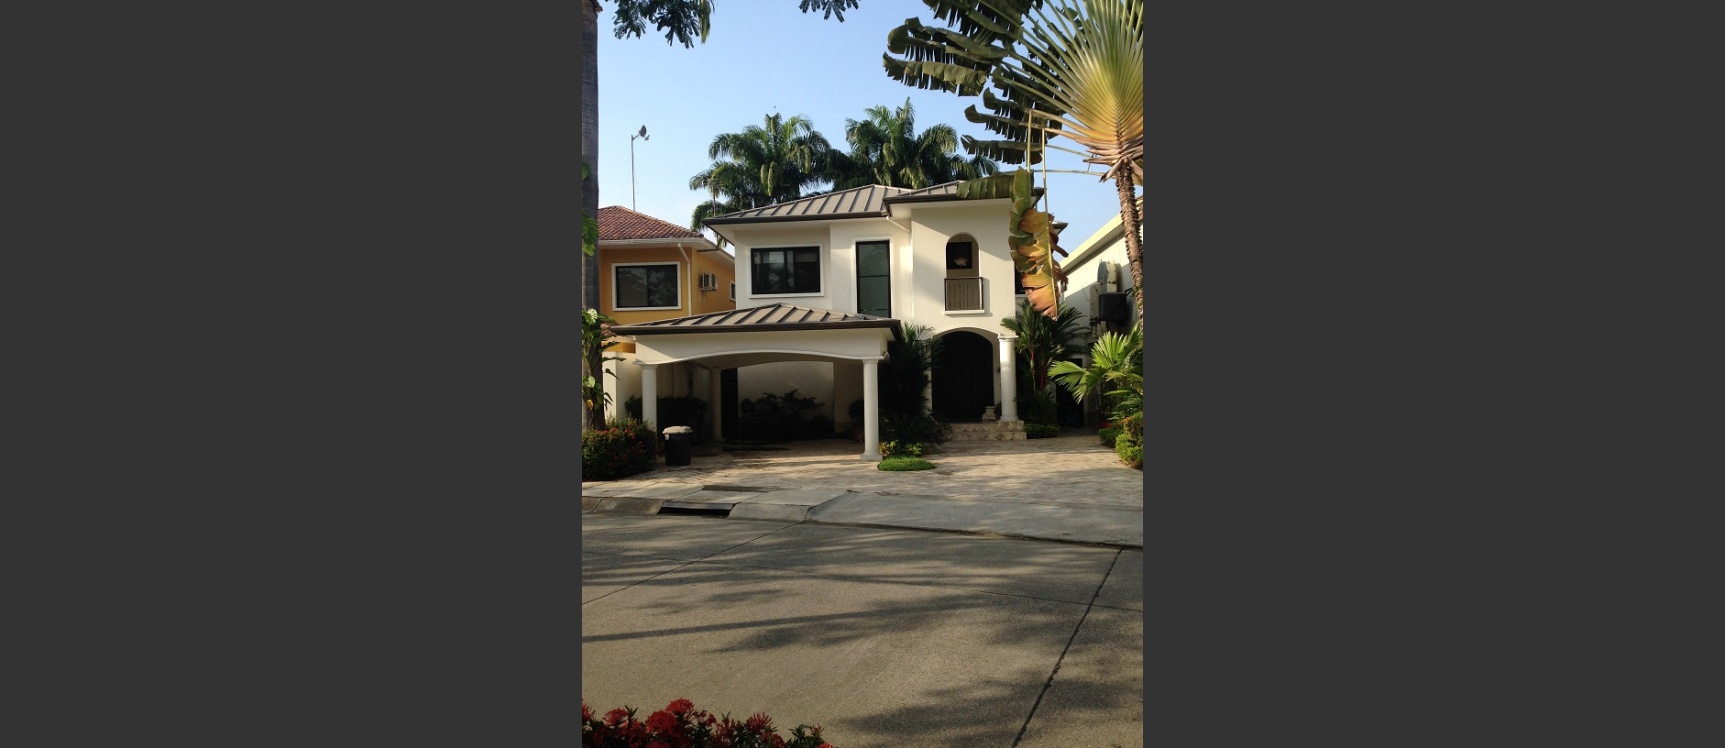 GeoBienes - Casa de Alquiler en Samborondon Lago Sol  - Plusvalia Guayaquil Casas de venta y alquiler Inmobiliaria Ecuador